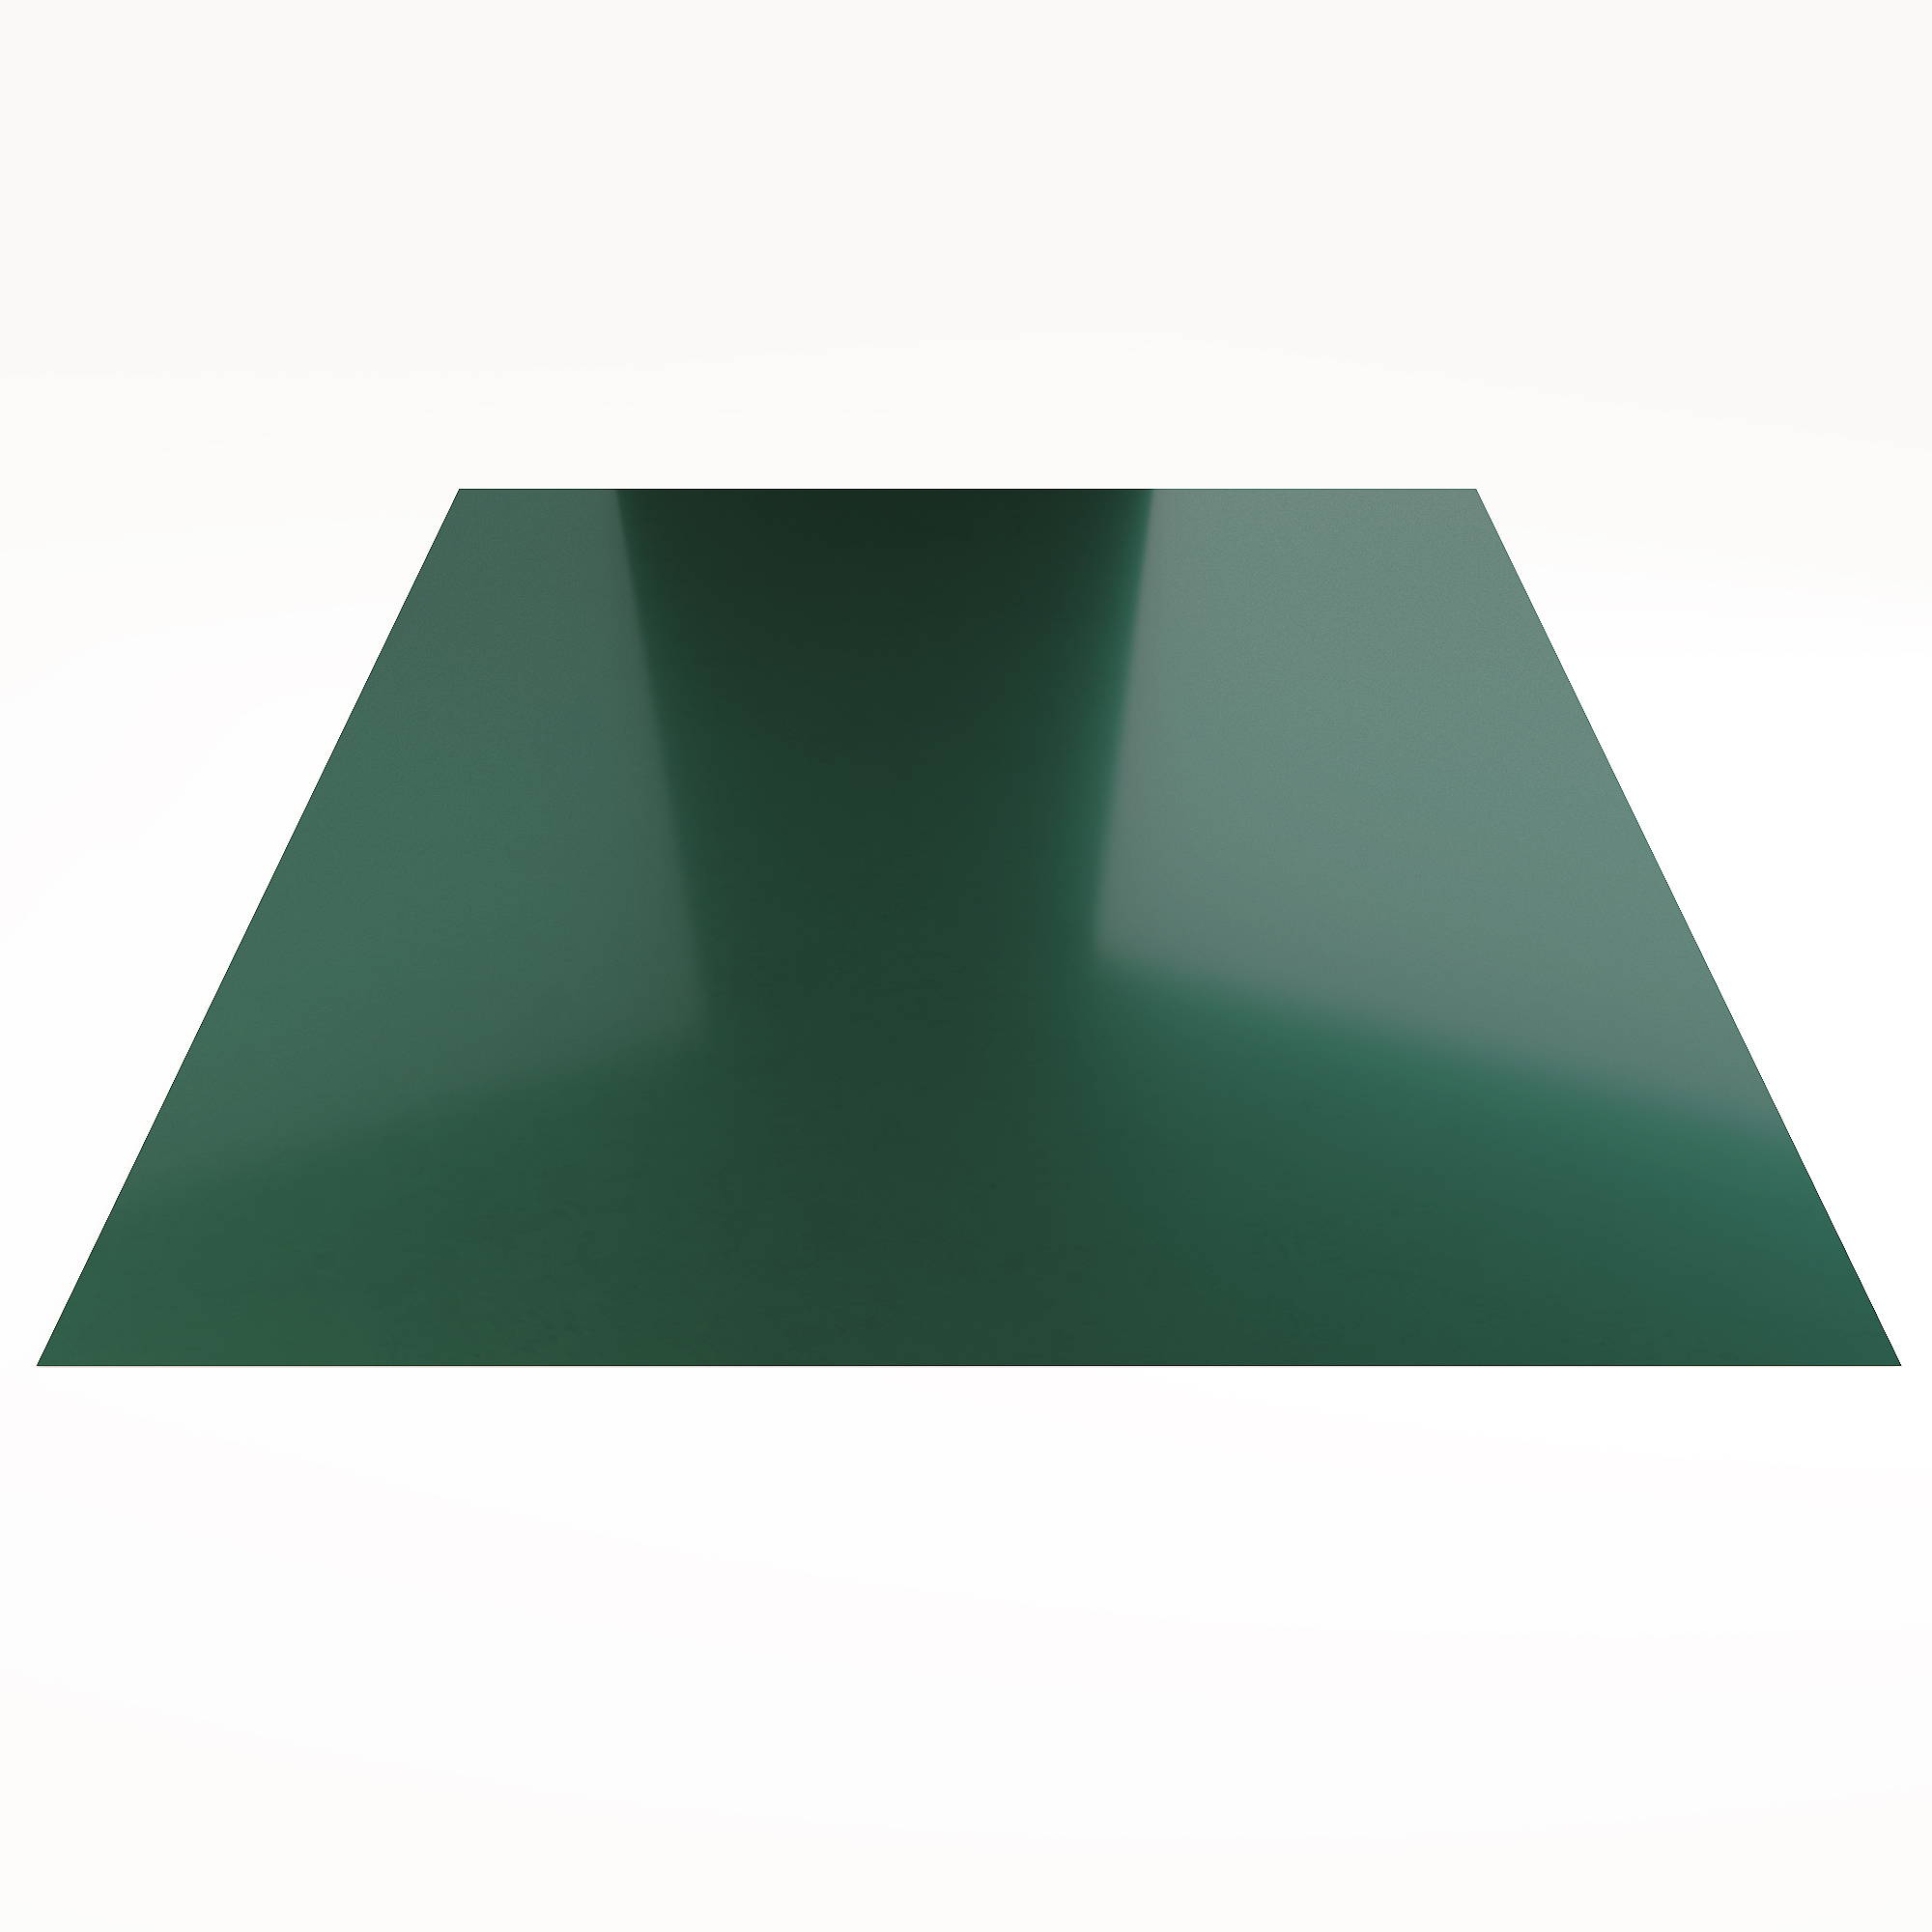 Гладкий лист Гладкий полиэстер RAL 6005 (Зелёный мох) 2000*1250*0,5 односторонний ламинированный